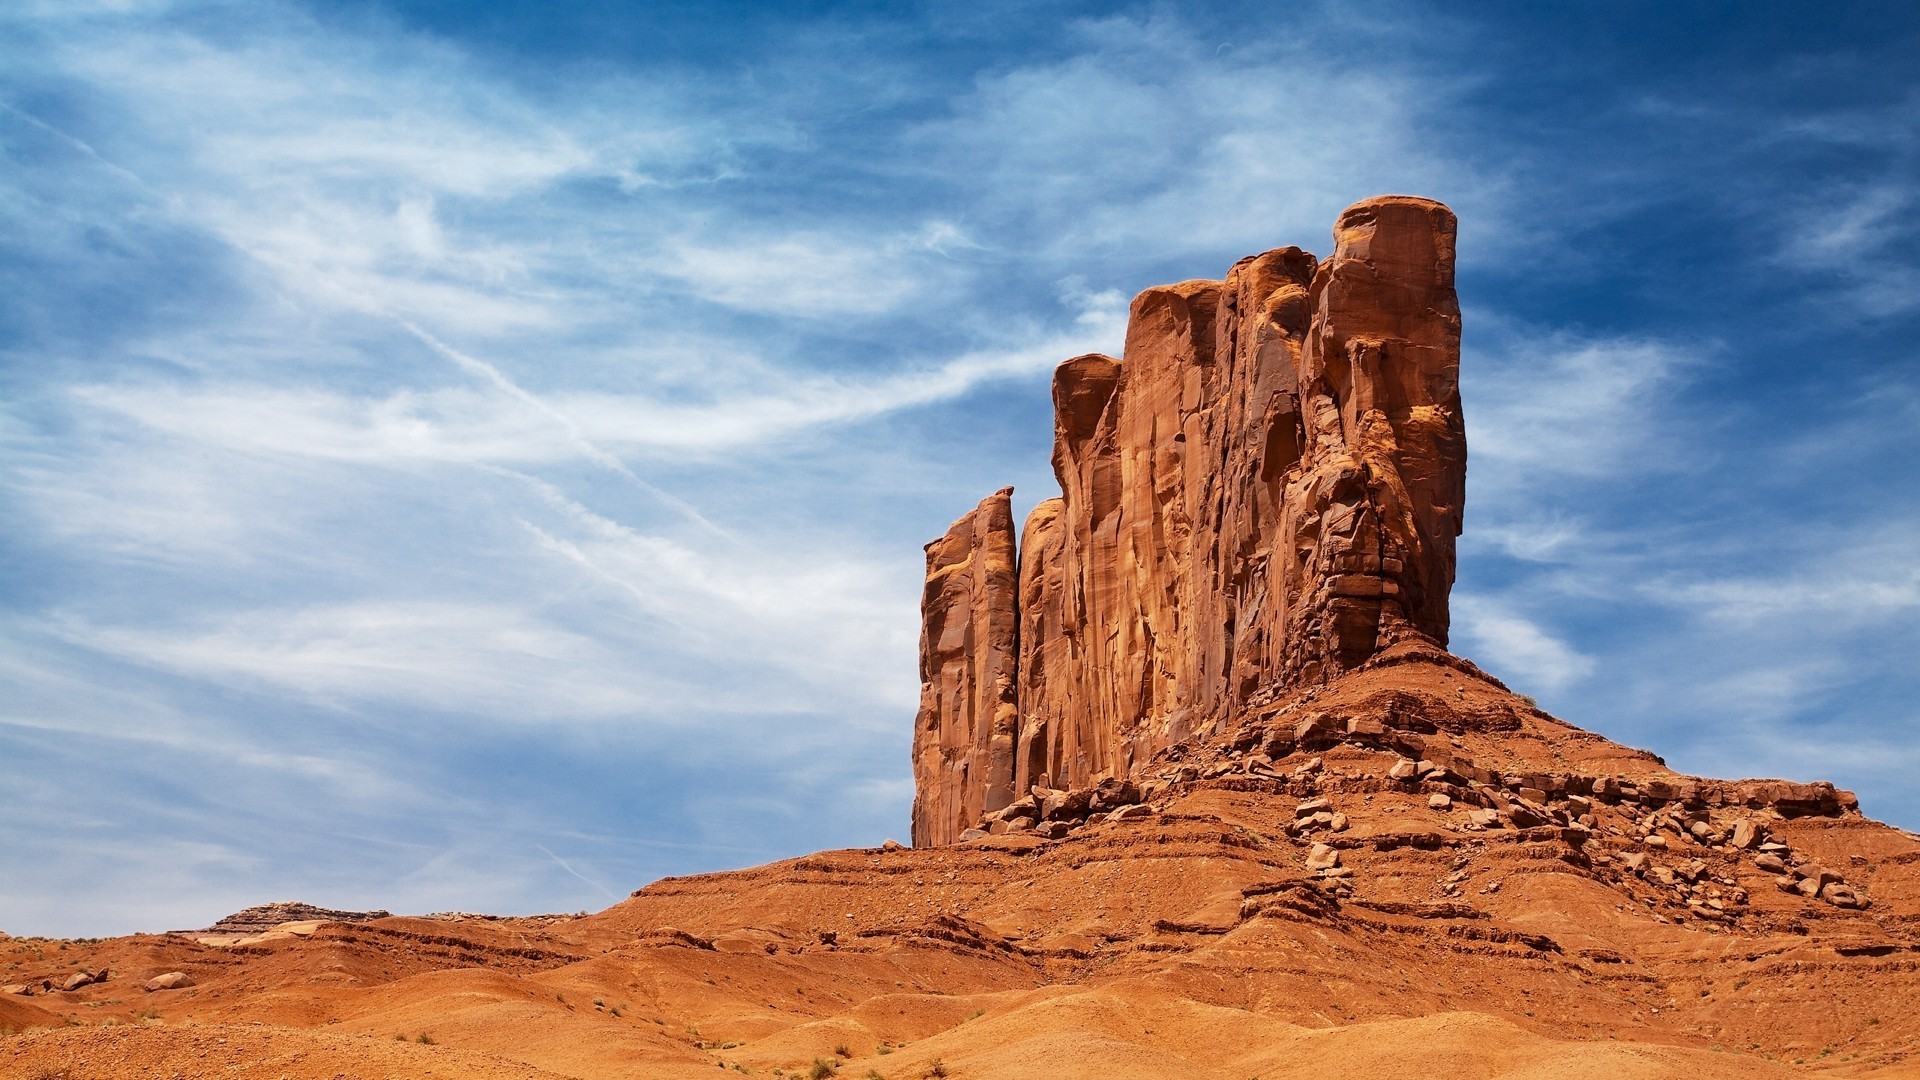 1920x1080 nature, Landscape, Desert, Rock, Sandstone, Sand, Rock Formation, Arizona  Wallpapers HD / Desktop and Mobile Backgrounds